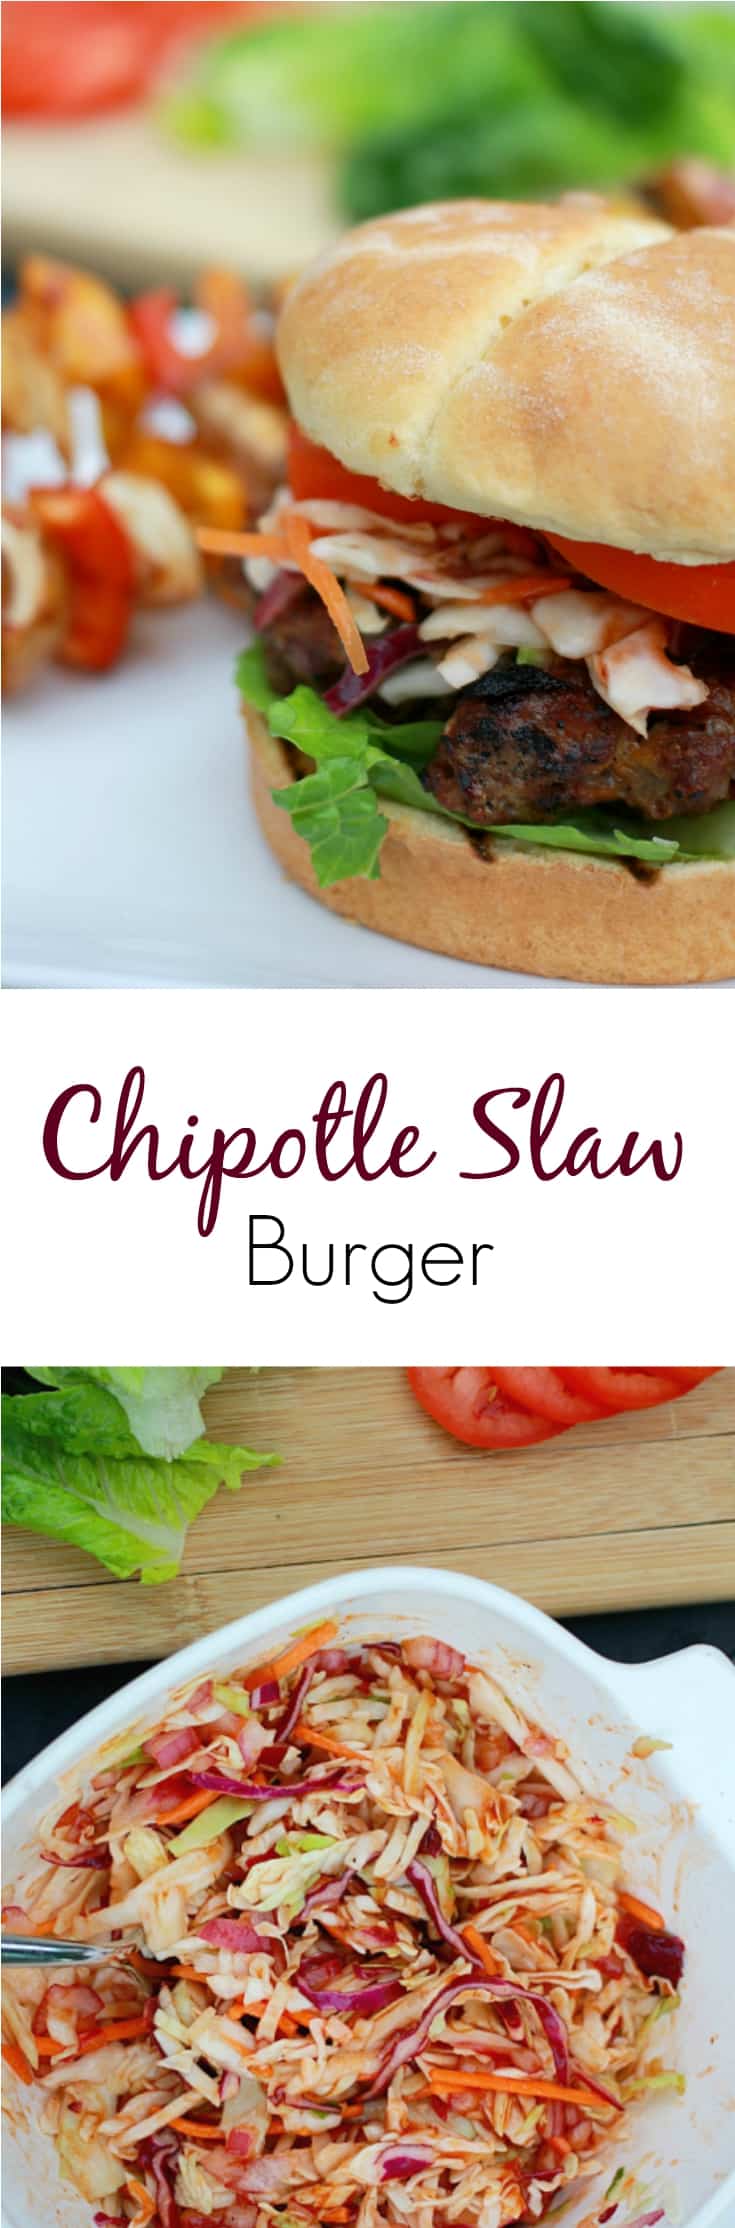 Chipotle Slaw Burger recipe